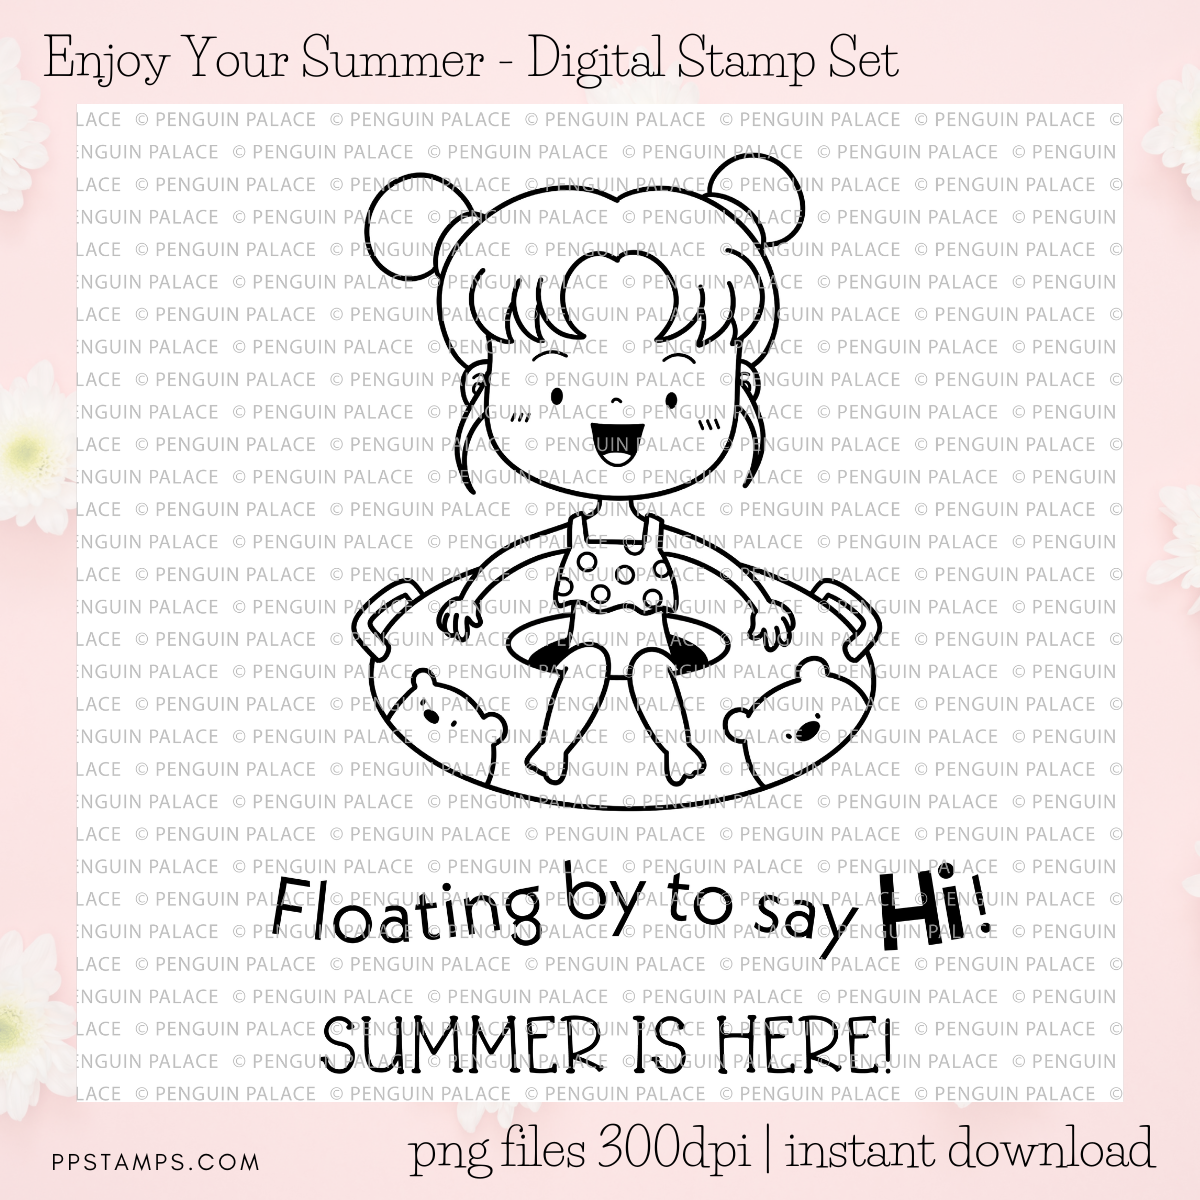 Enjoy Your Summer - Digital Stamp